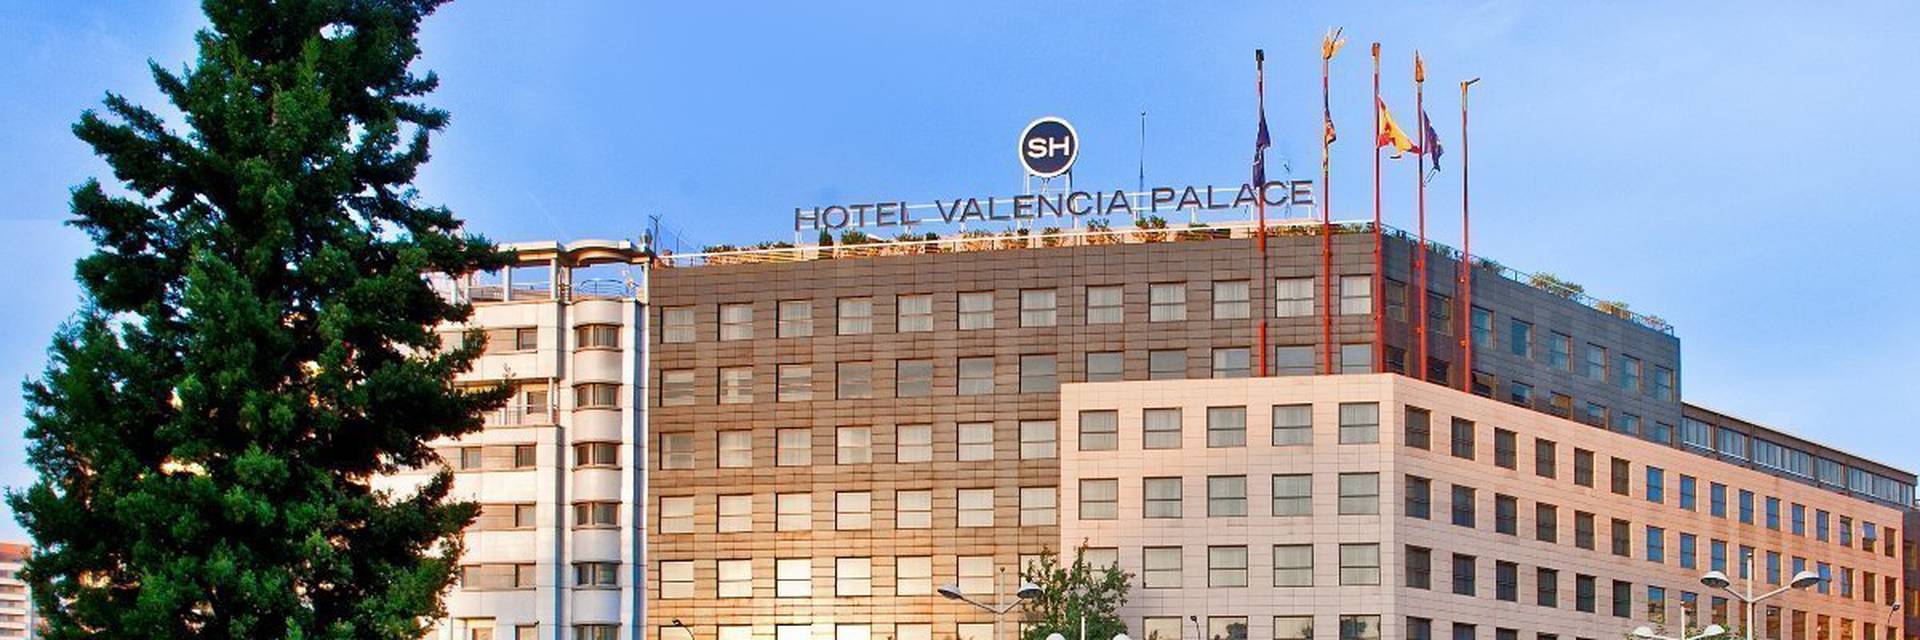 Mapa sh valencia palace Hotel SH Valencia Palace